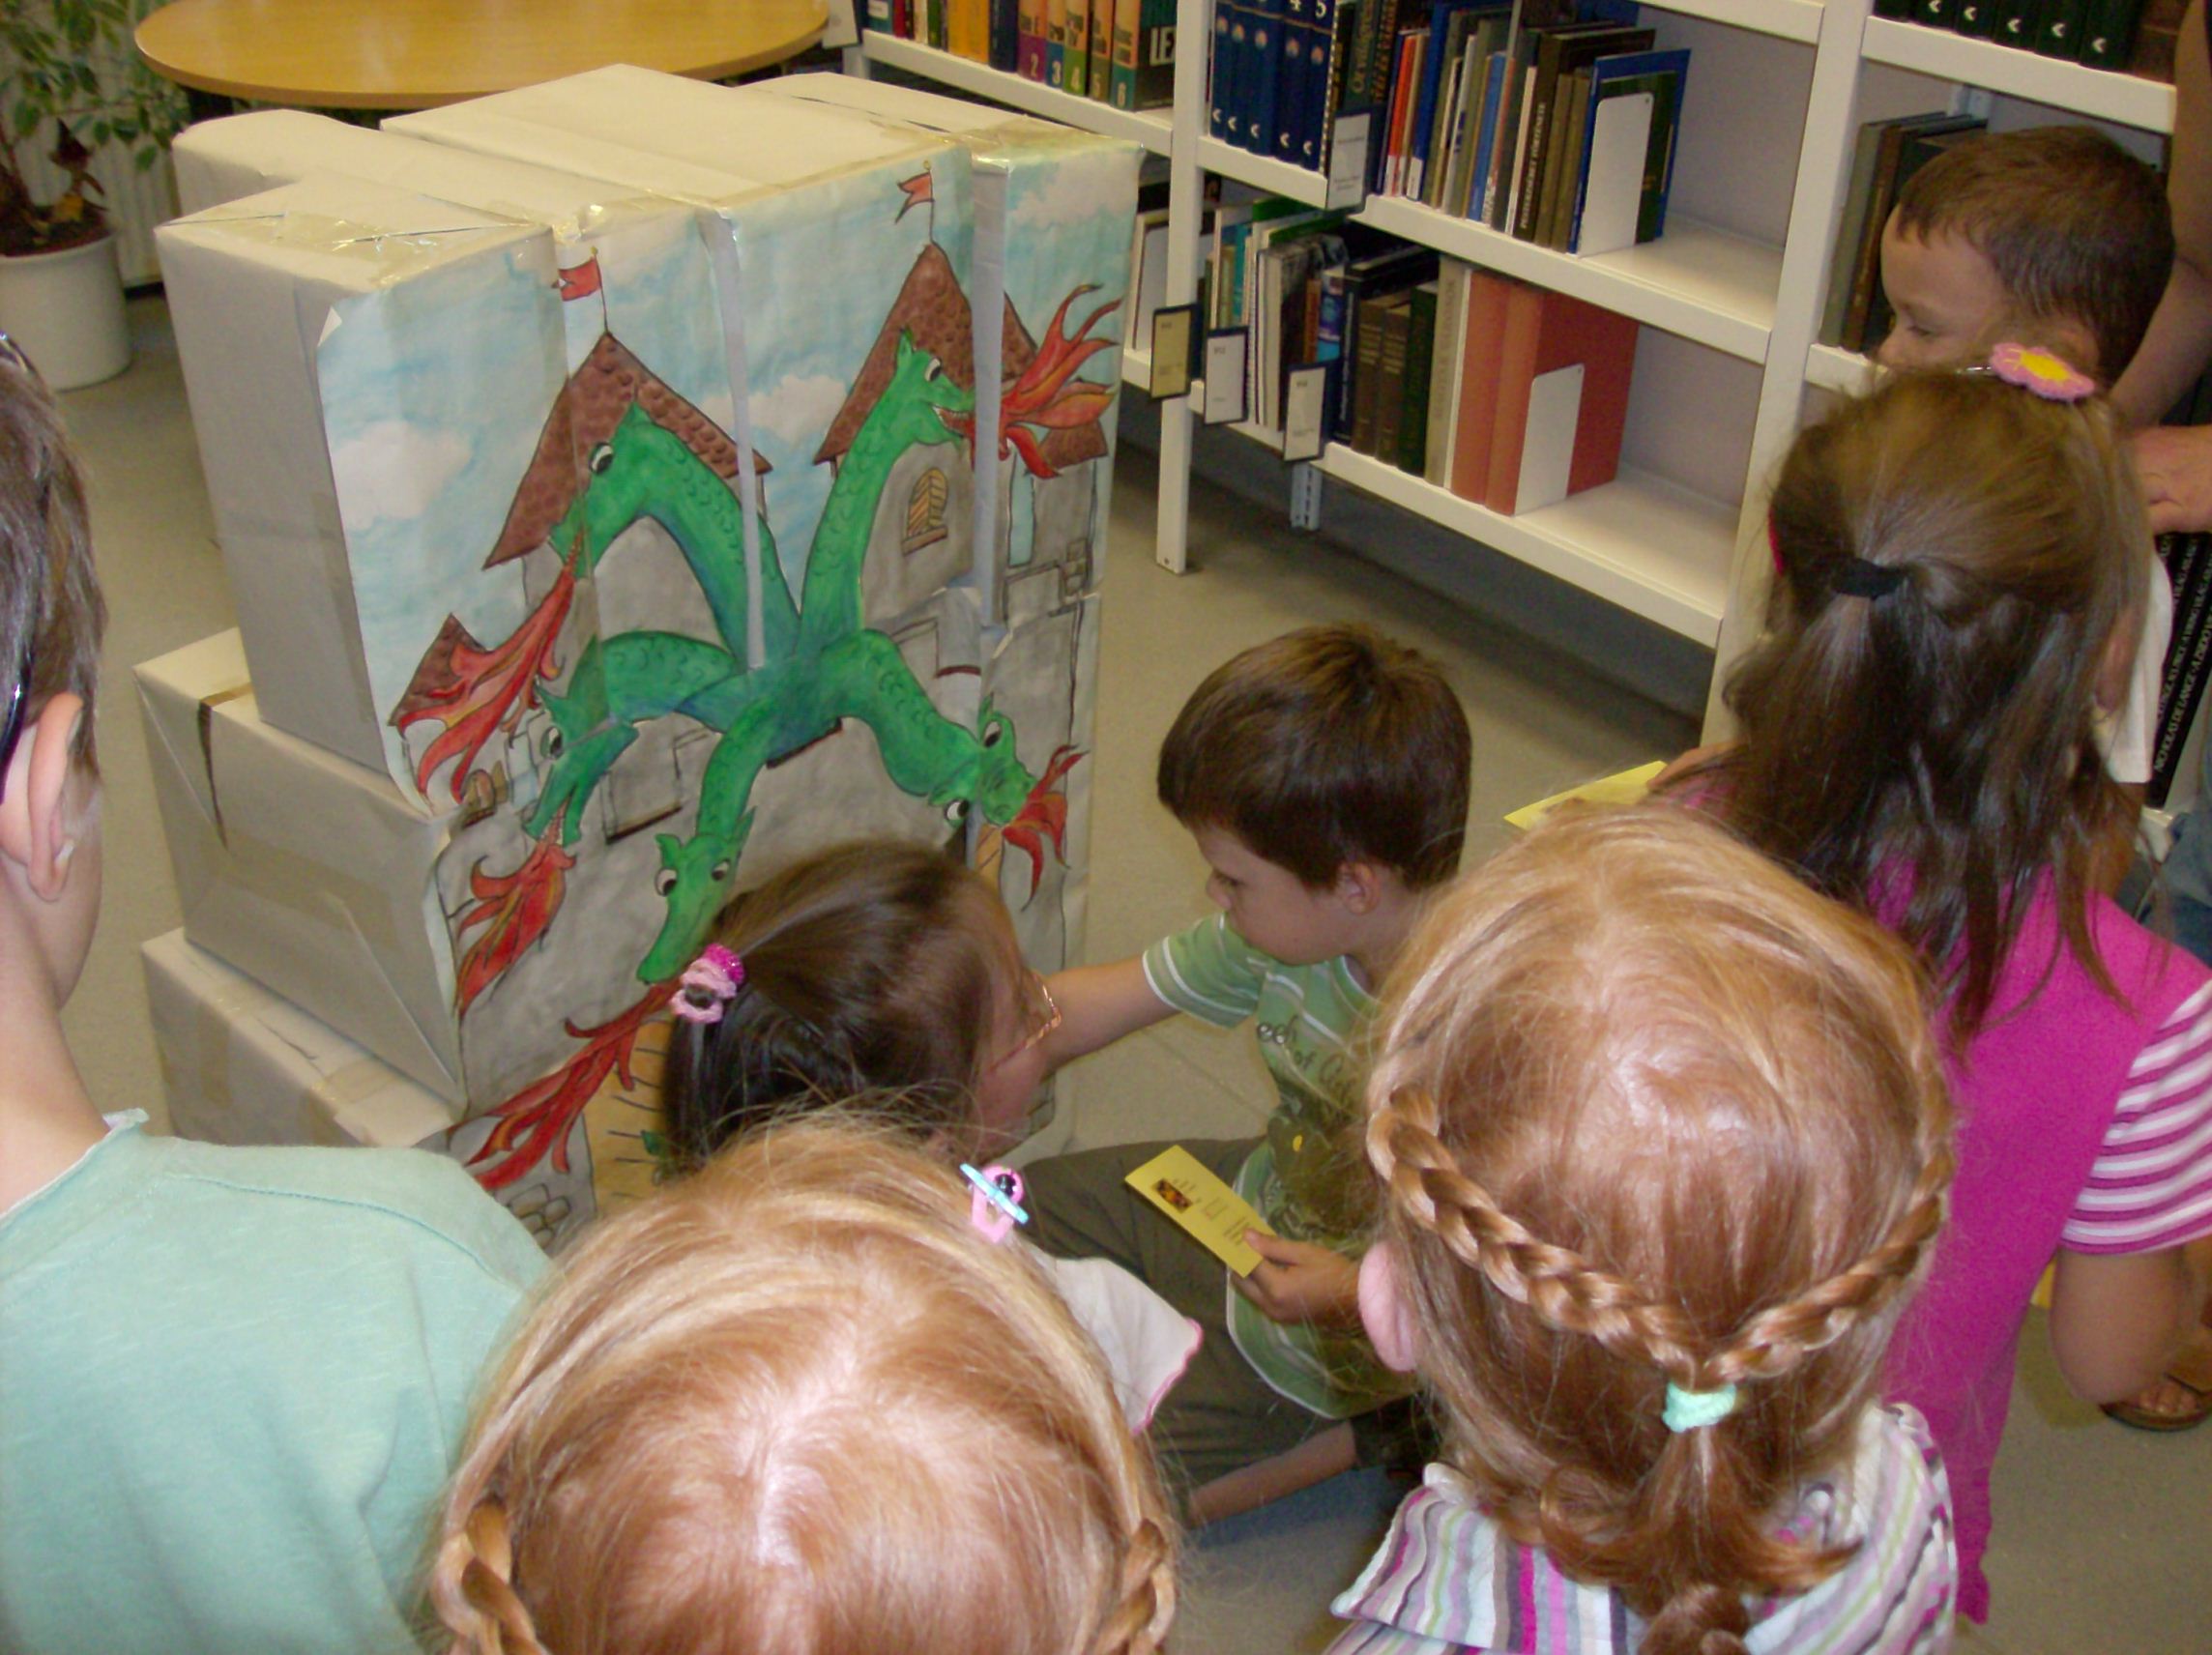 A gyerekek sárkányt raknak ki dobozokból